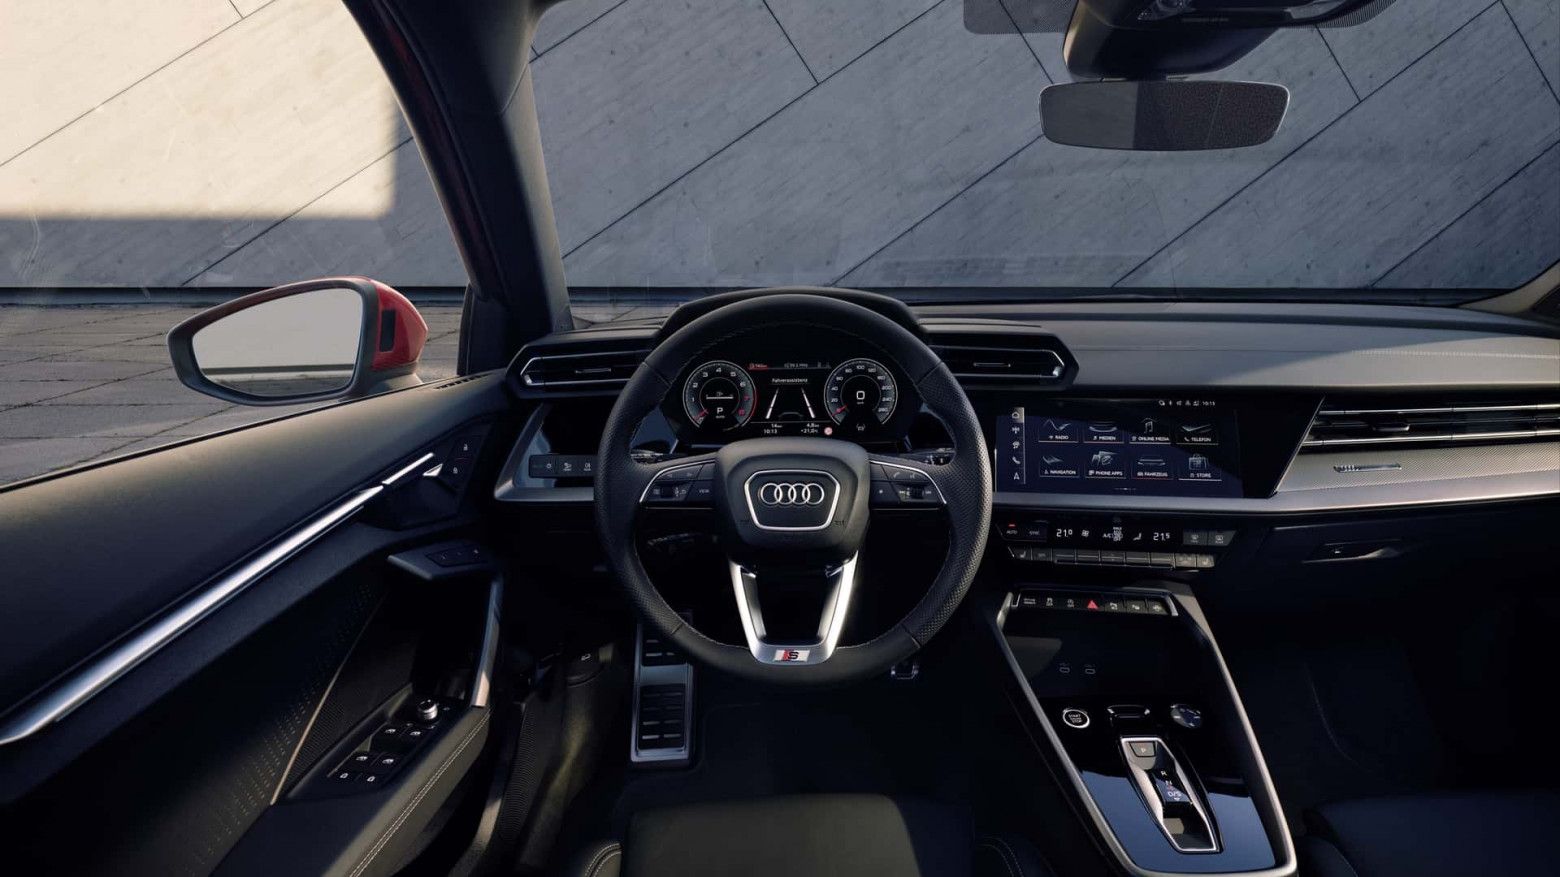 Подробнее о "Компания Audi сделала платными некоторые функции в своих автомобилях"